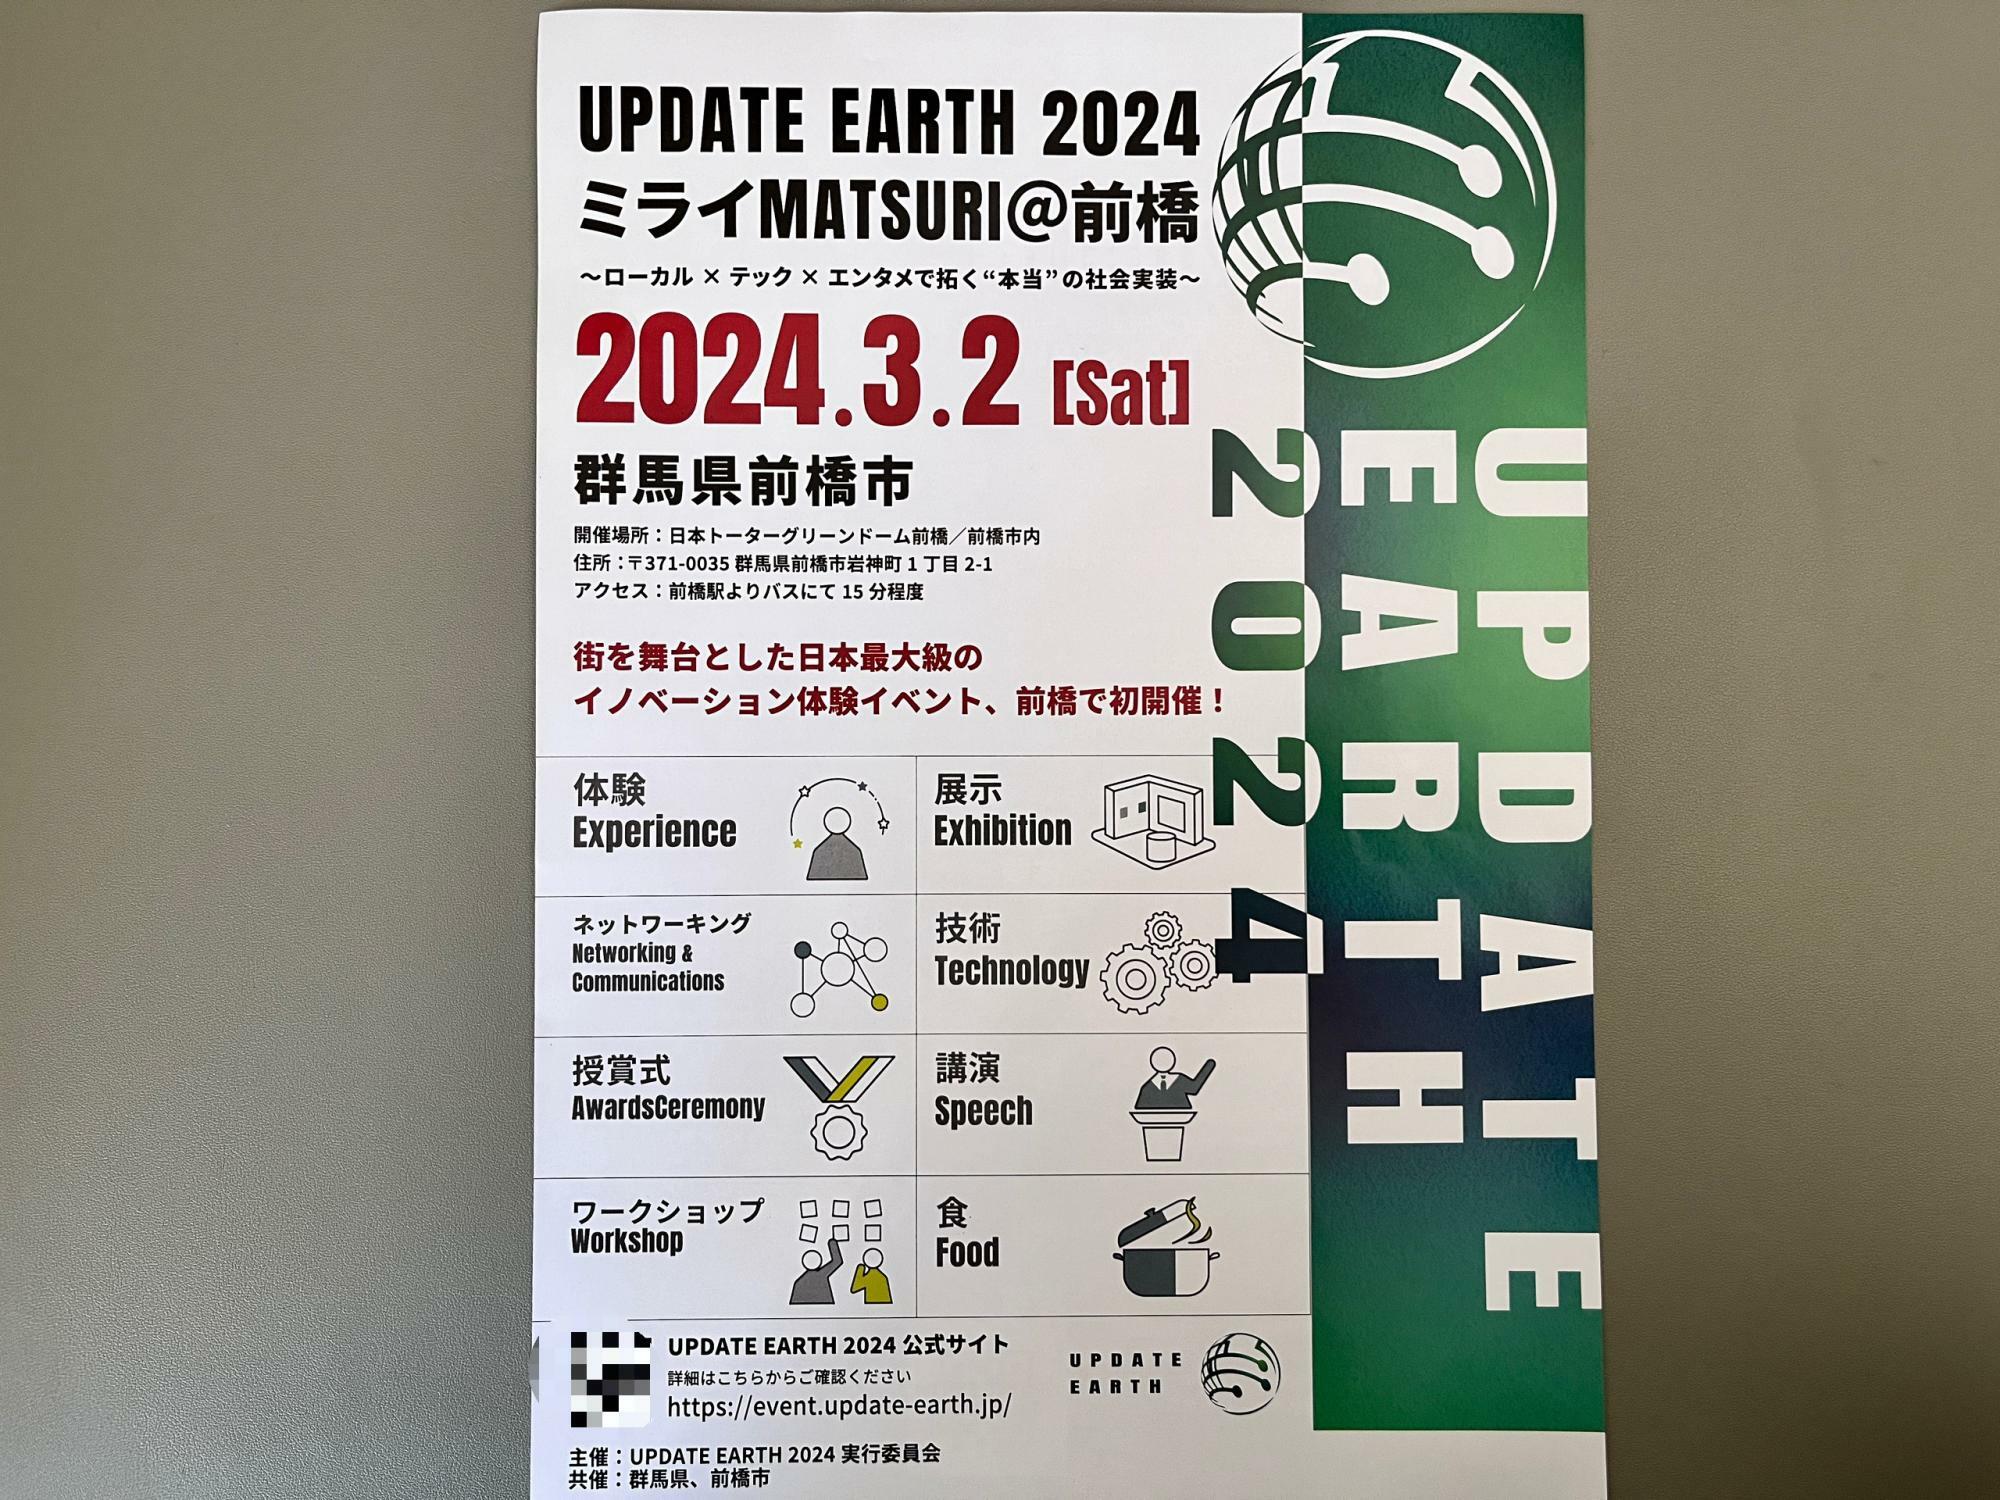 「UPDATE EARTH 2024 ミライMATSURI@前橋」開催告知のチラシ